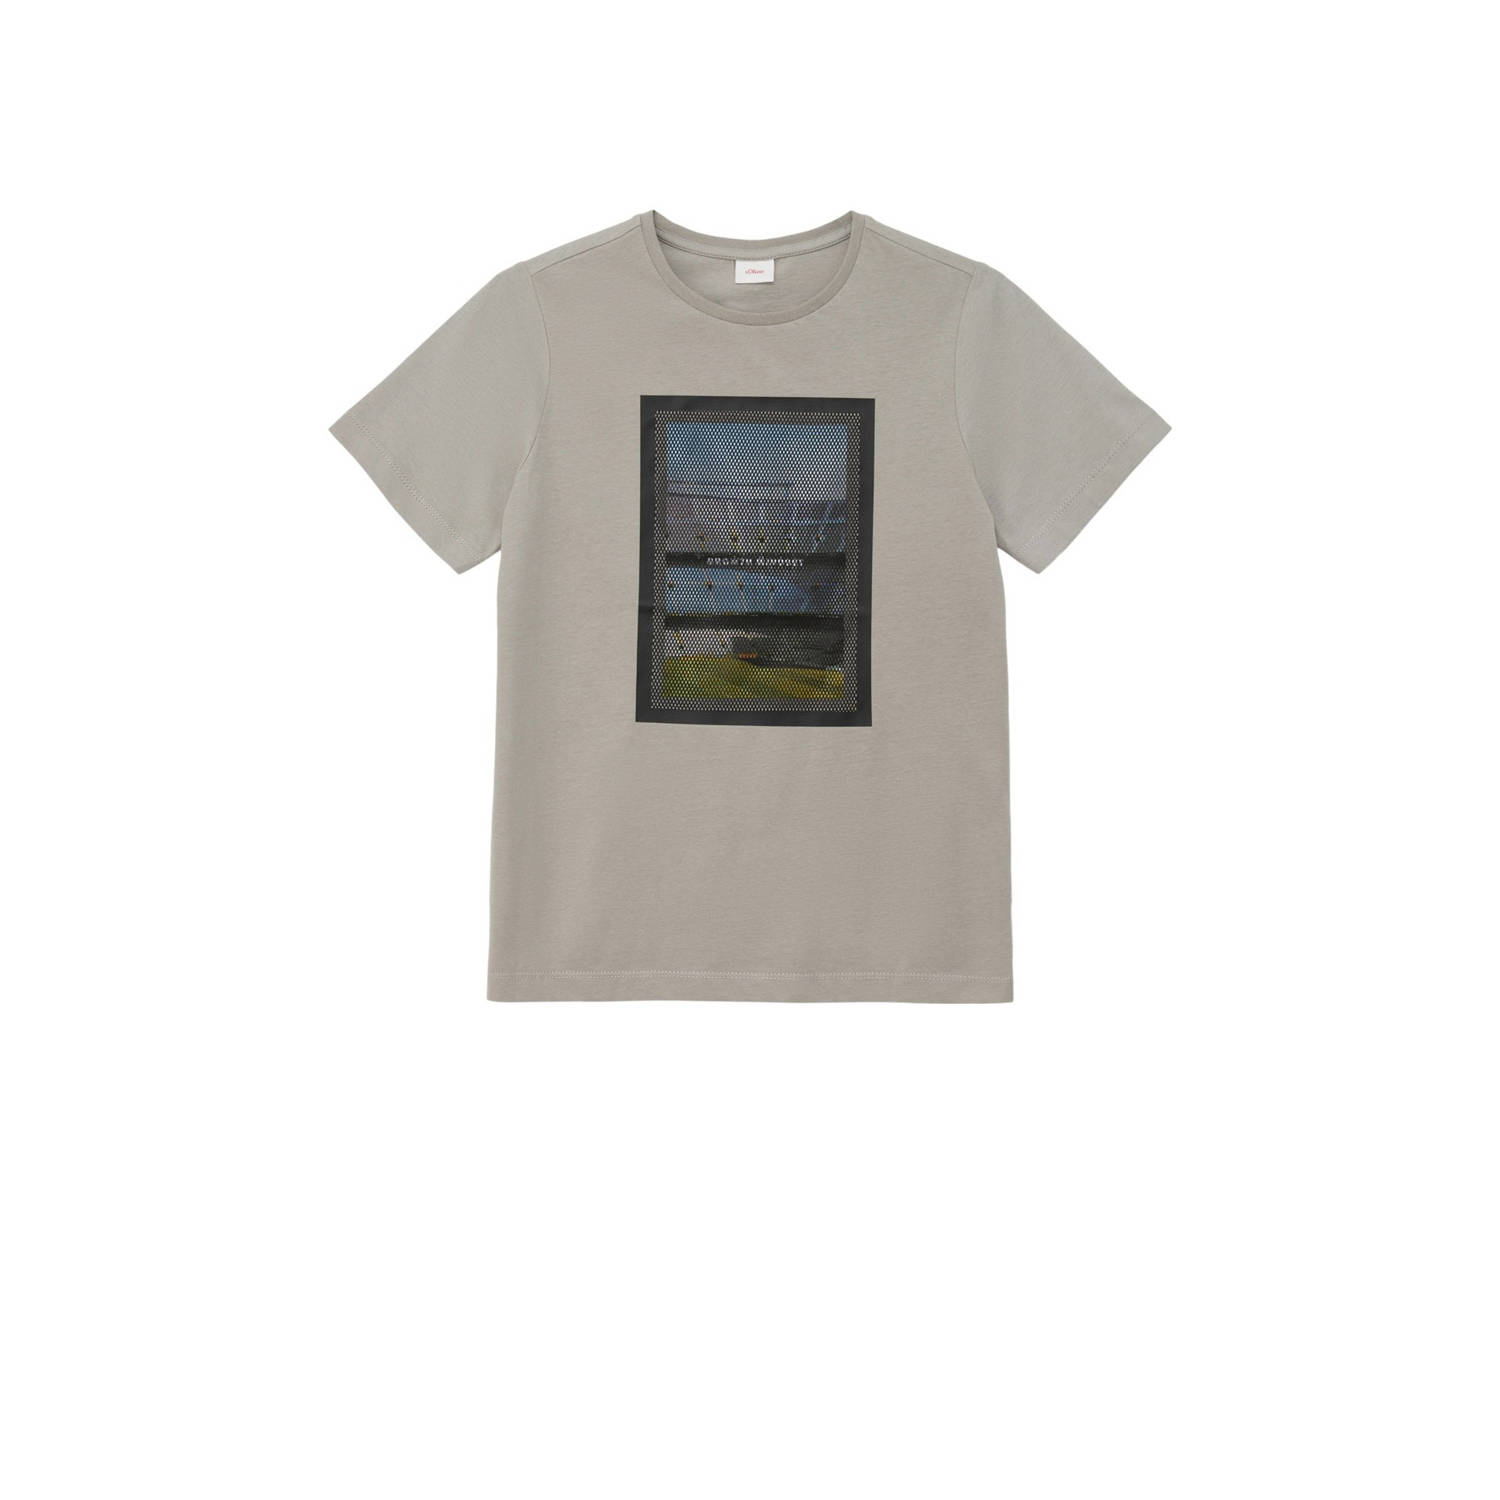 S.Oliver T-shirt met printopdruk lichtgrijs Jongens Katoen Ronde hals Printopdruk 140